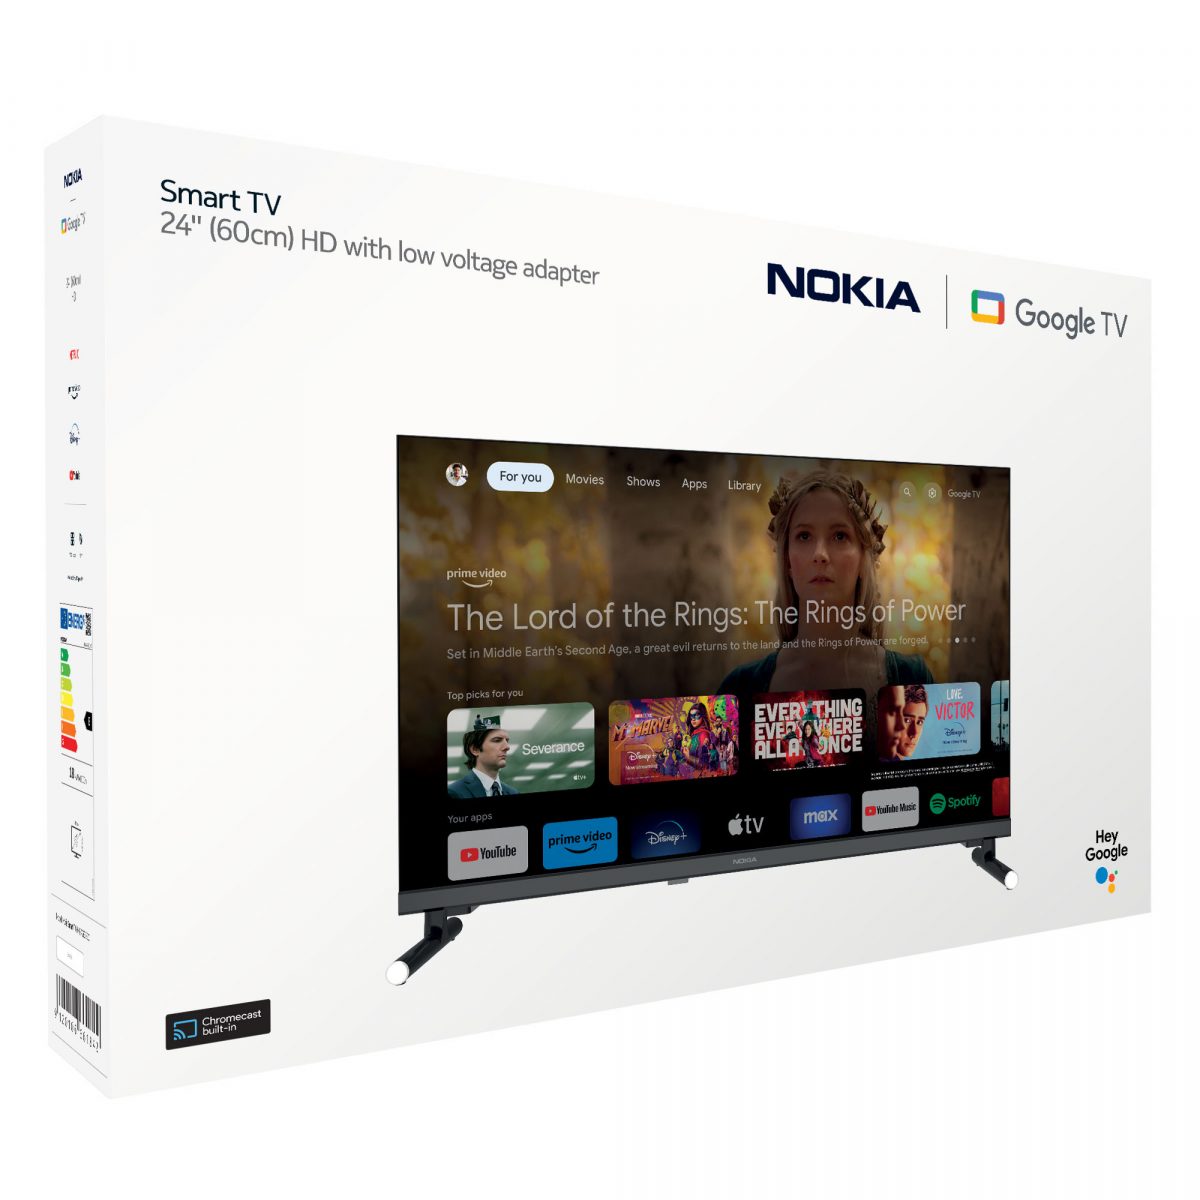 Nokia Google TV 24" HD 12V -malli toimii myös 12 voltin jännitteellä.